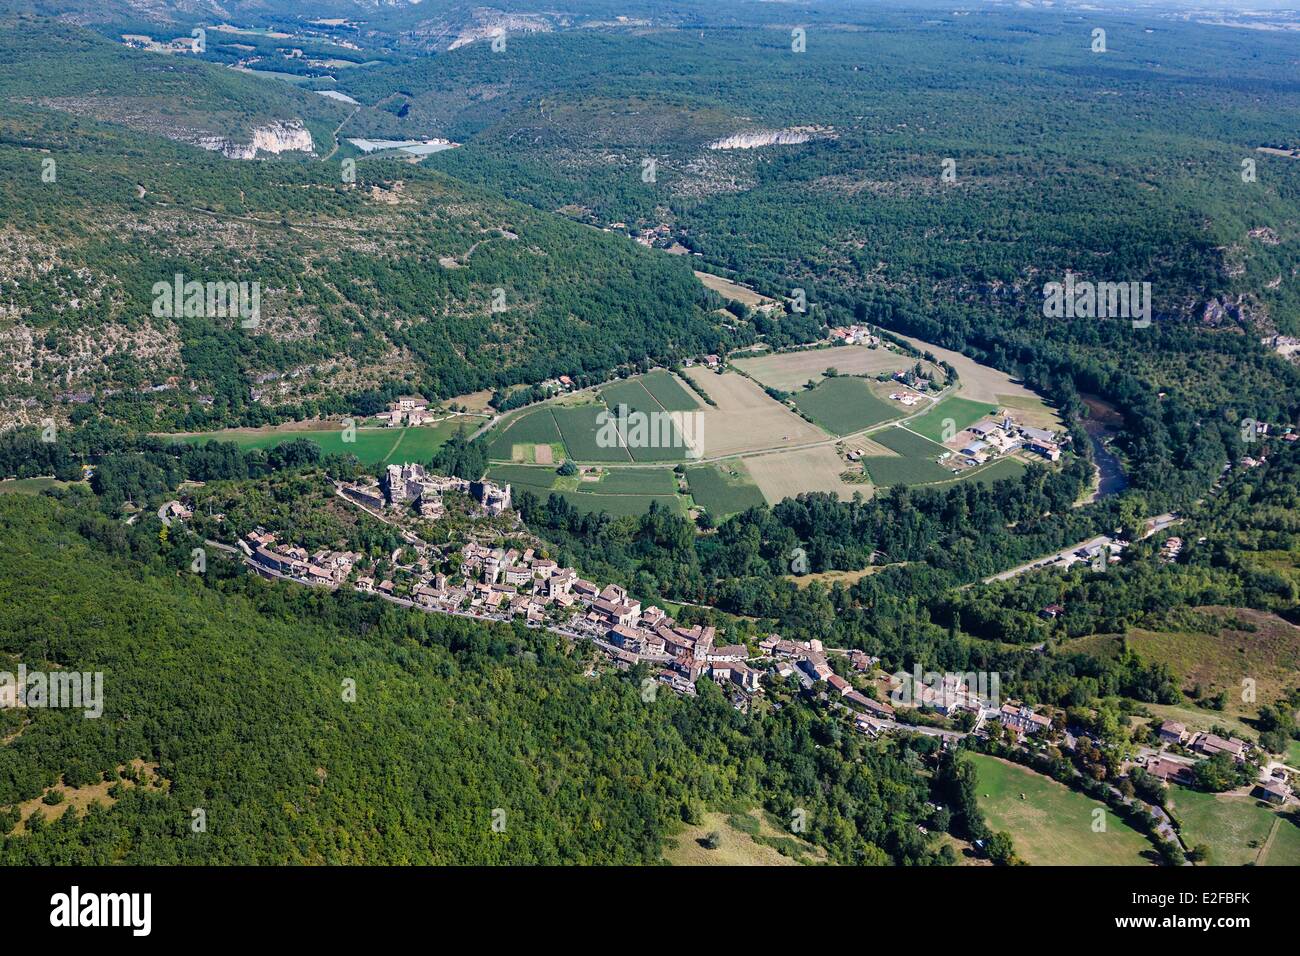 La France, Tarn, Penne, le village et la campagne environnante (vue aérienne) Banque D'Images